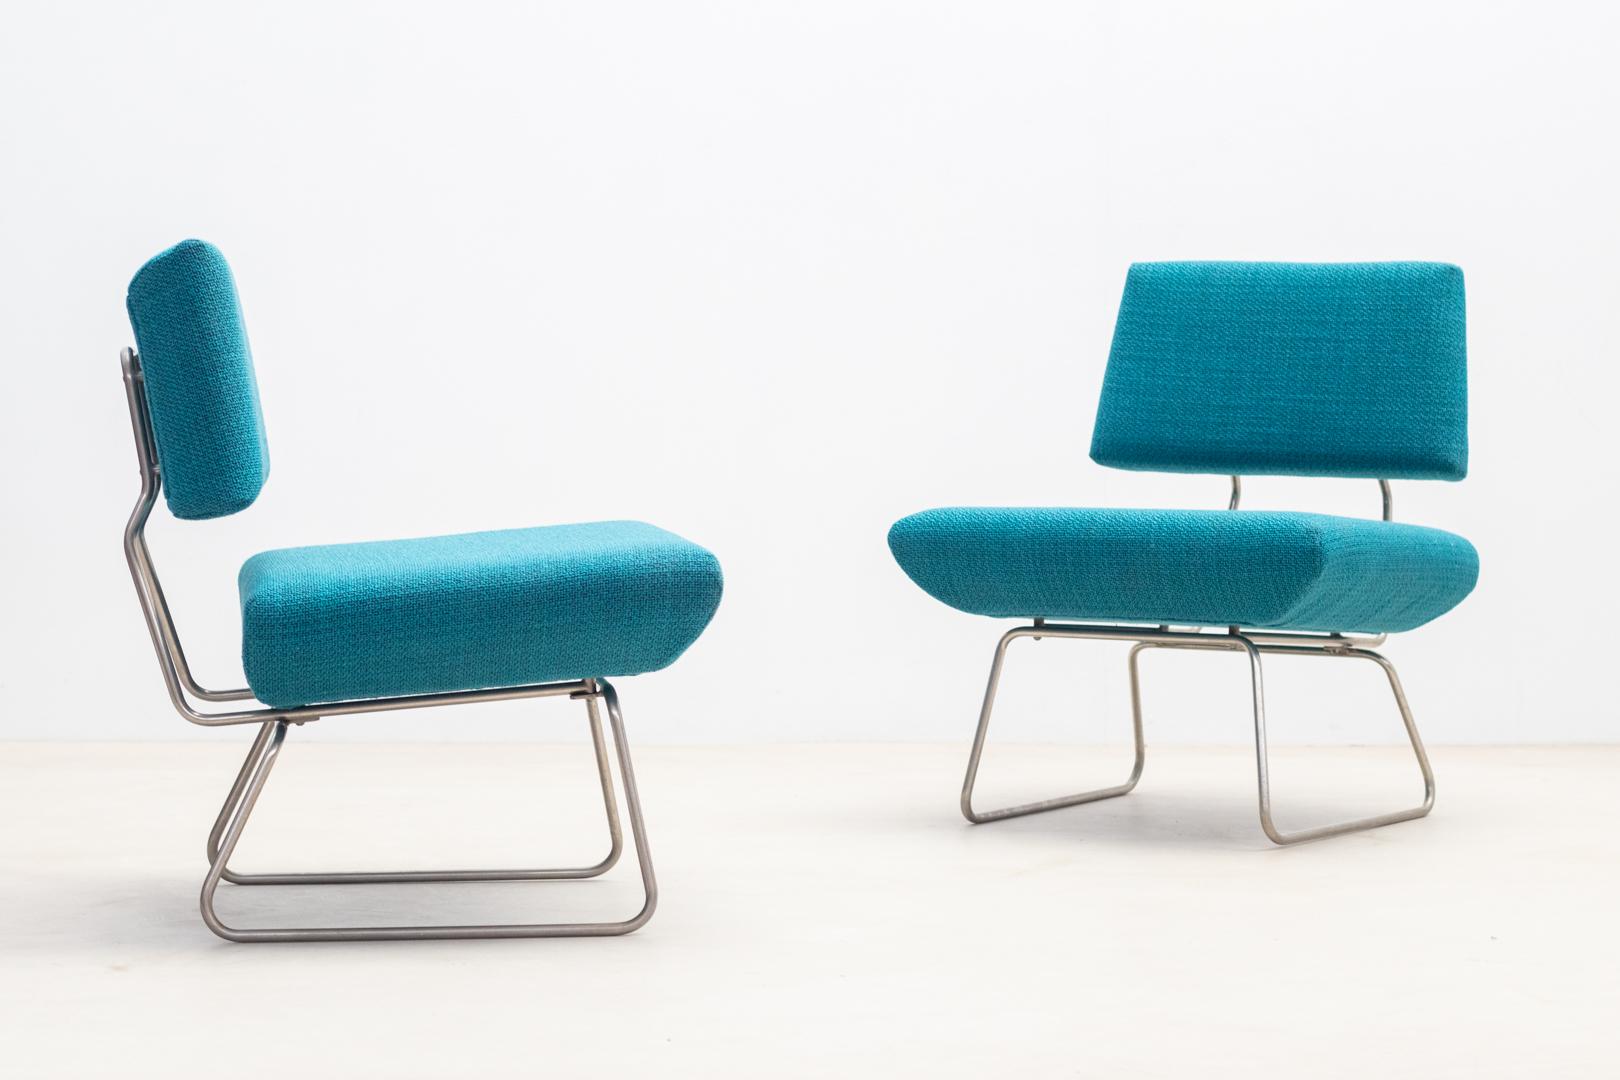 Ein Paar niedrige Sessel mit klaren Linien  von Georges Coslin, produziert von Trevi Spa in den 1960er Jahren
Diese Sessel haben eine charakteristische Metallrohrstruktur, die für Haltbarkeit und Halt sorgt. 
Die Sitze und Rückenlehnen dieser Sessel